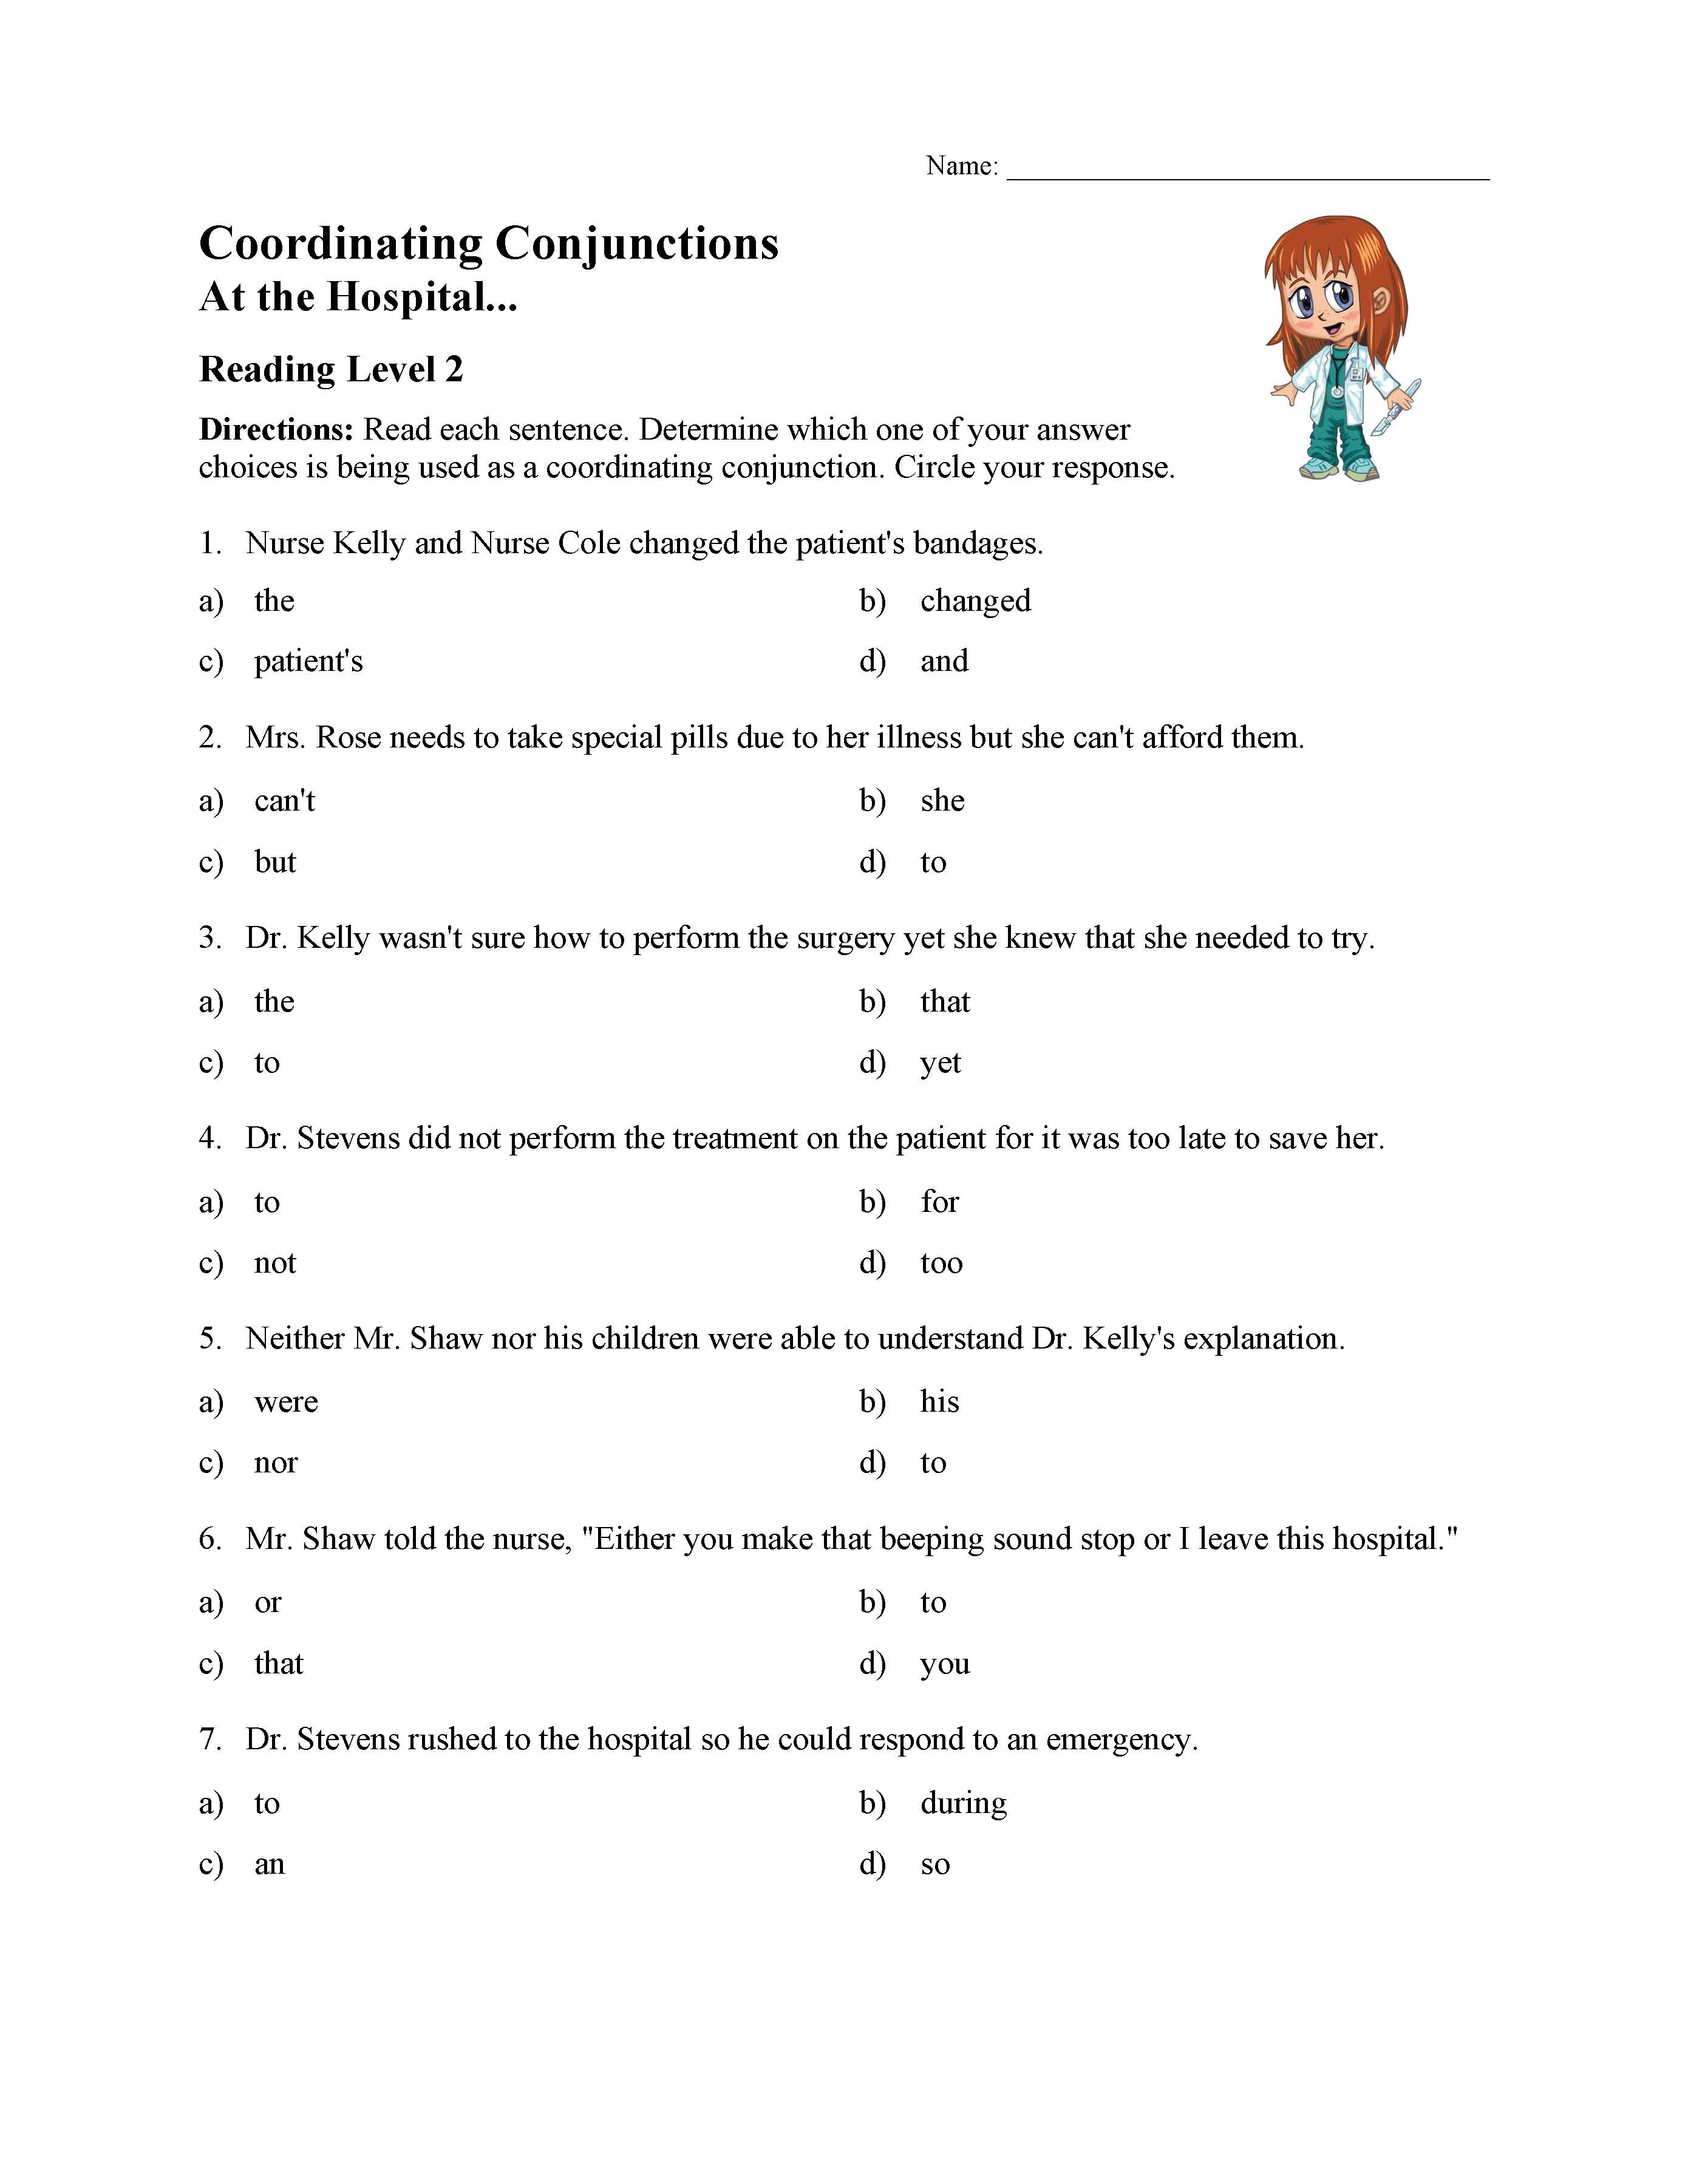 Conjunctions Worksheet